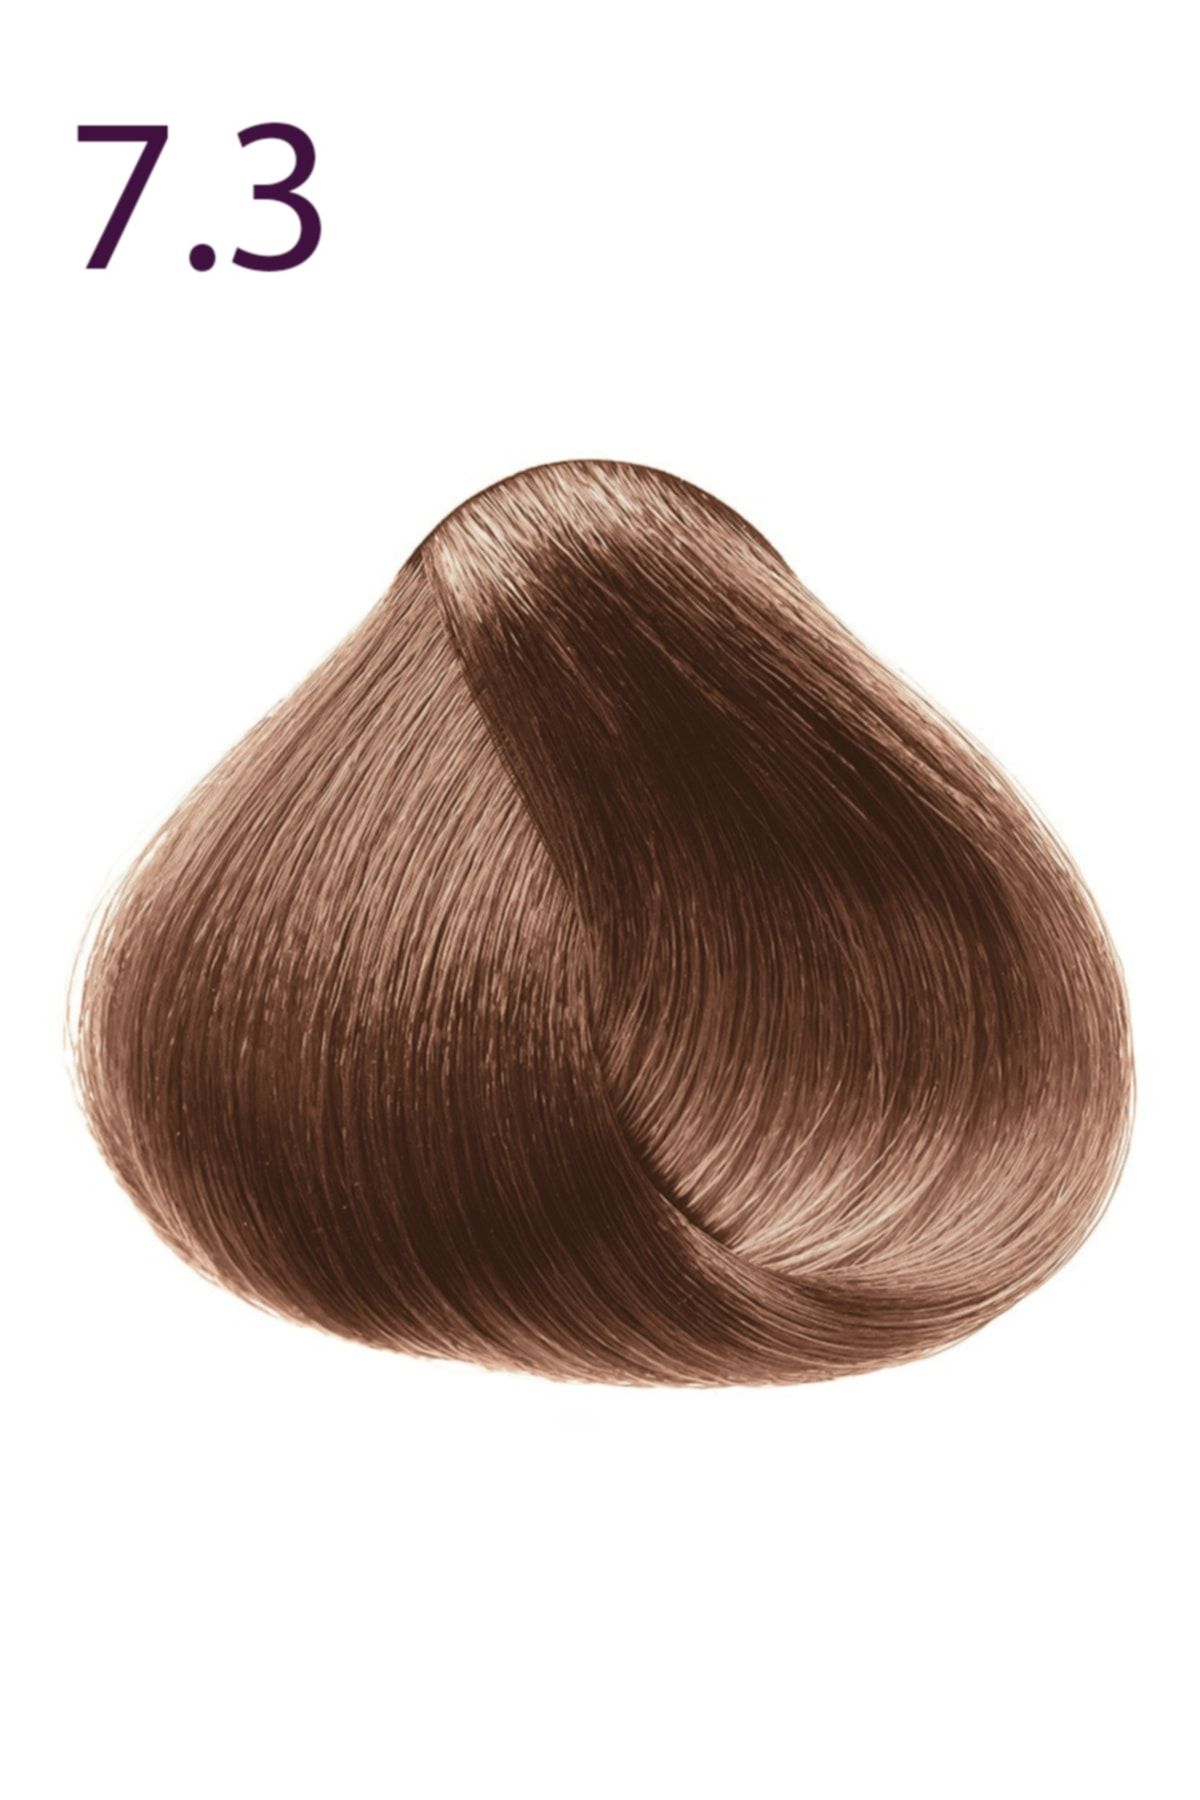 Faberlic Expert Color Kalıcı Saç Boyası - 7.3 Tarçın - 50 Ml